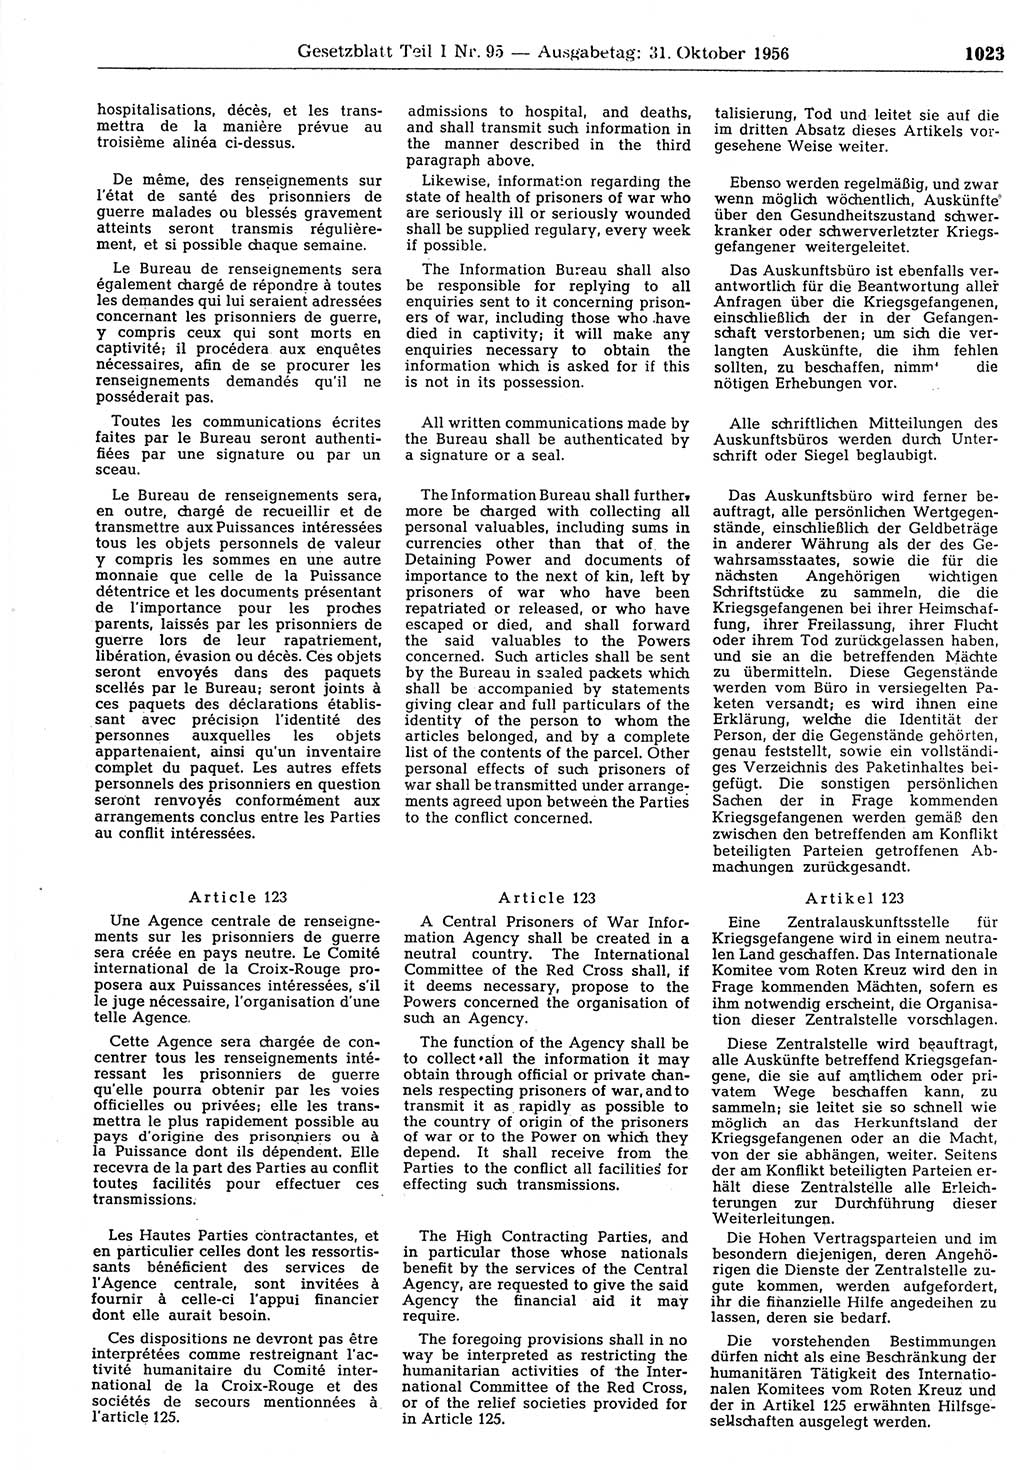 Gesetzblatt (GBl.) der Deutschen Demokratischen Republik (DDR) Teil Ⅰ 1956, Seite 1023 (GBl. DDR Ⅰ 1956, S. 1023)